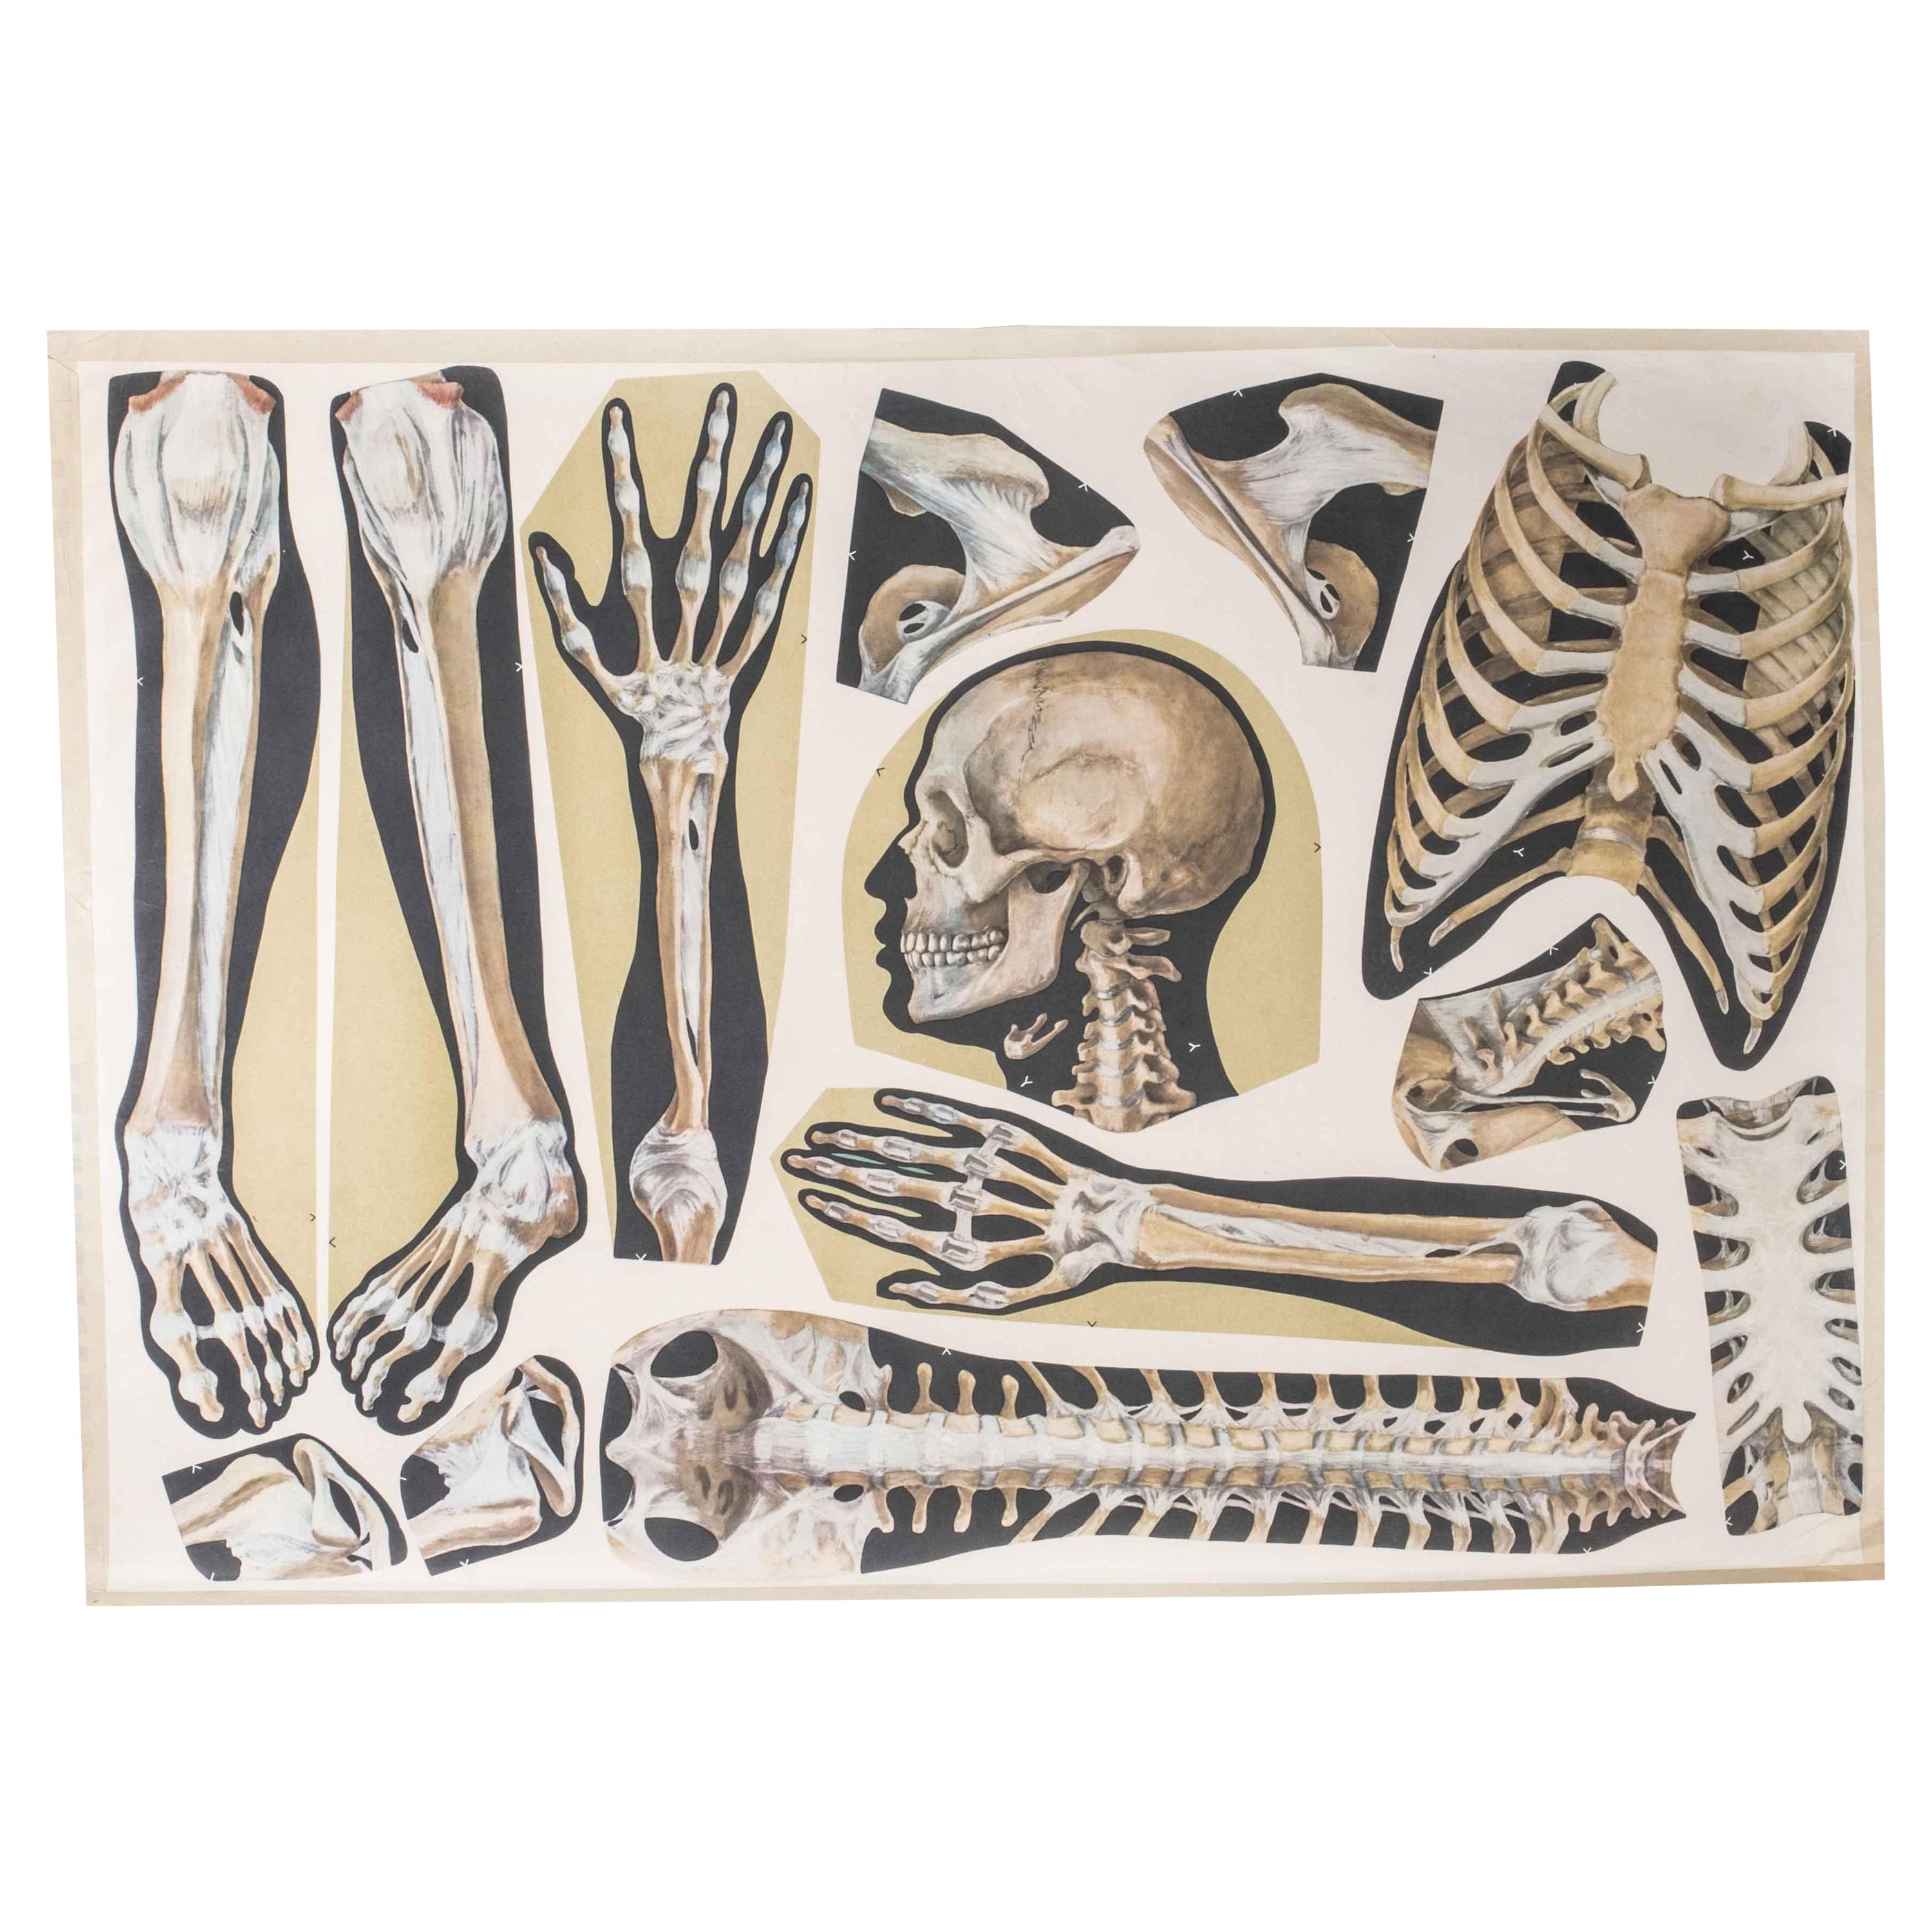 Pädagogisches Poster mit menschlichen Skelettteilen aus dem frühen 20. Jahrhundert